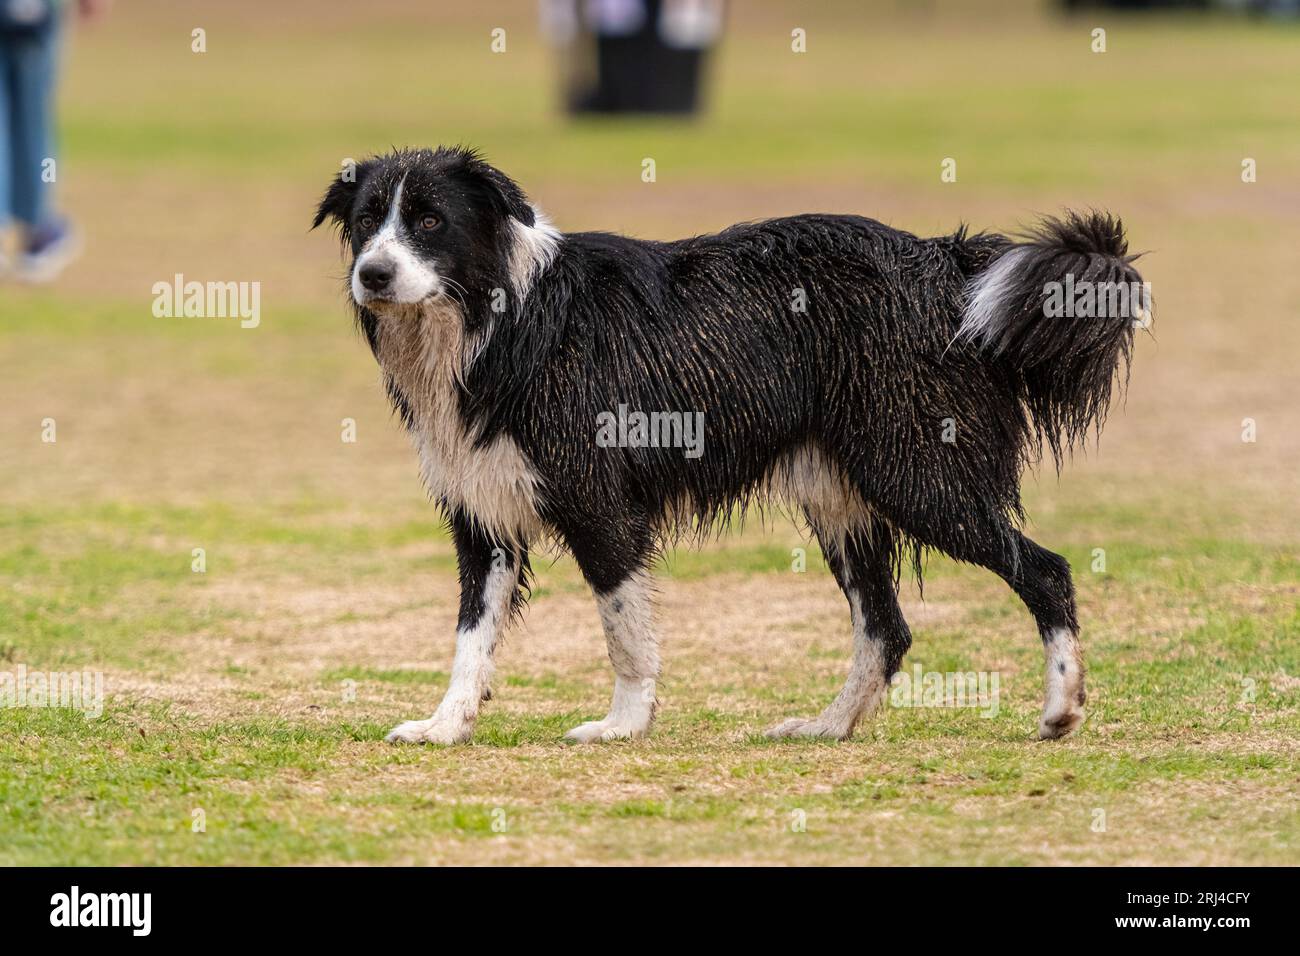 Cachorro sucio de Collie de la frontera caminando en el parque del perro, con el fondo borroso verde Foto de stock